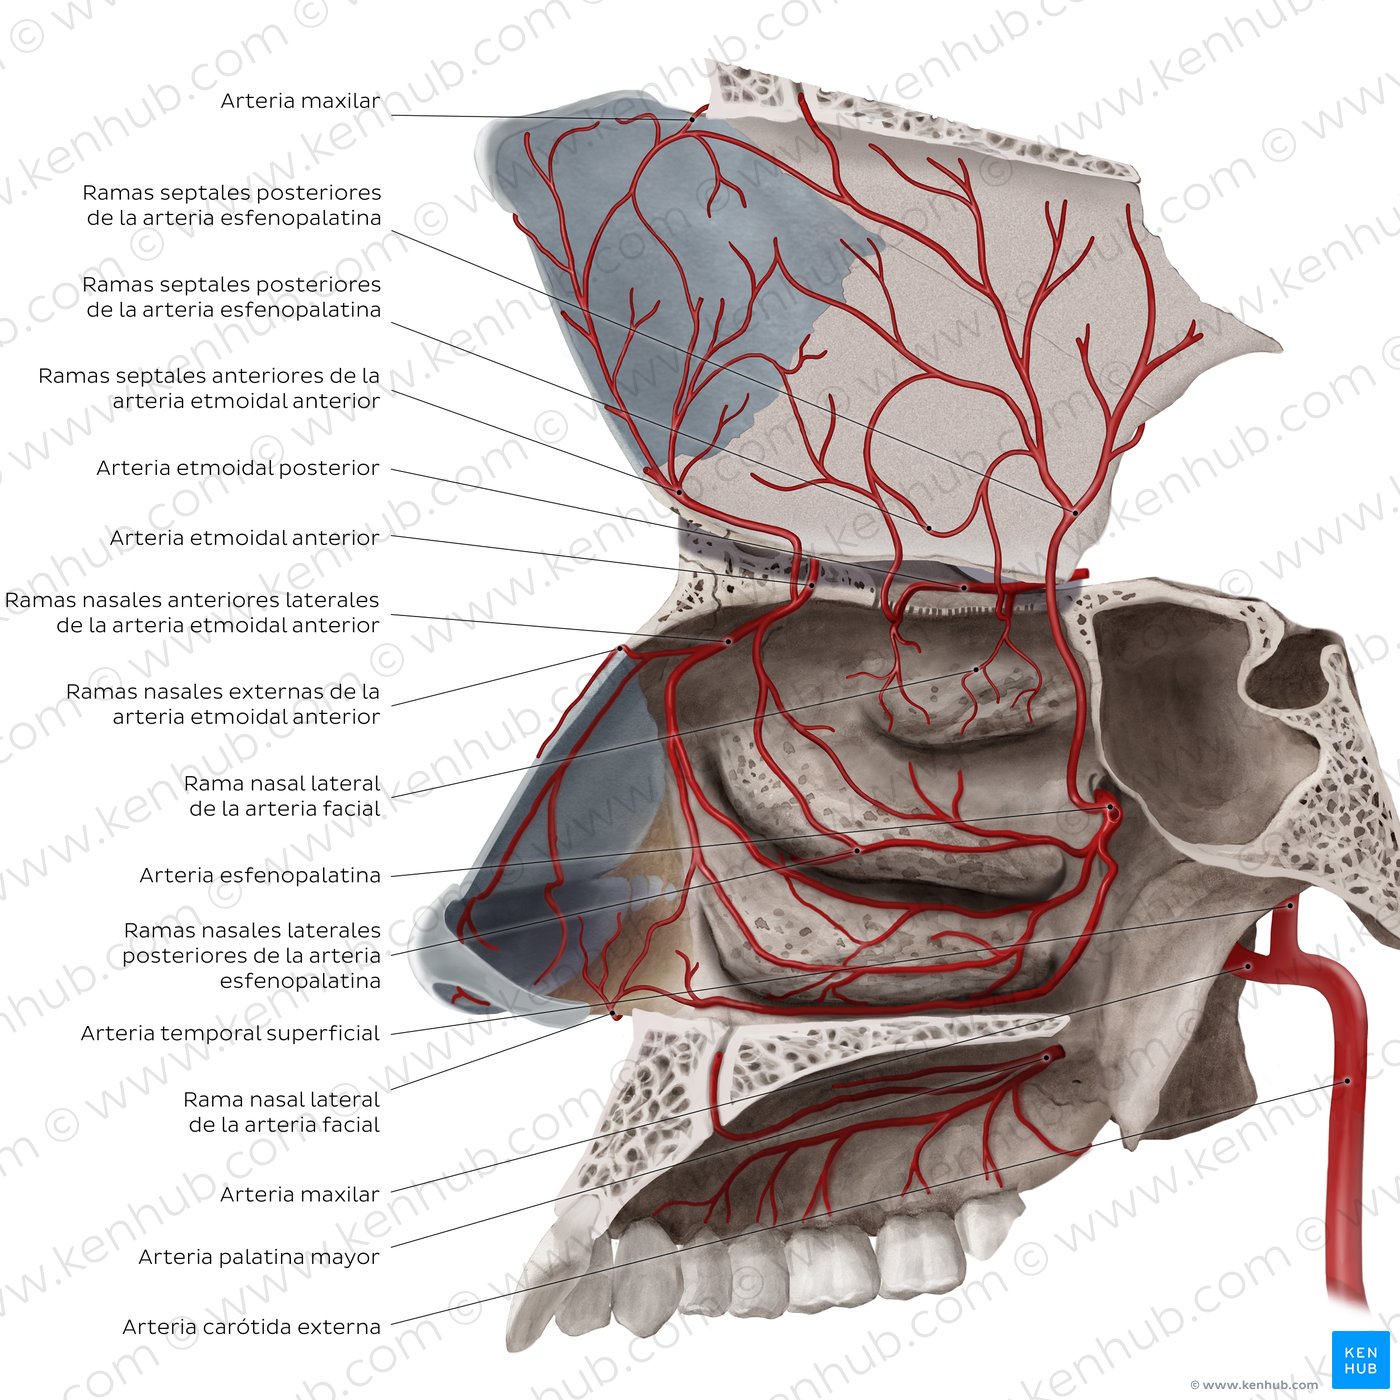 Vasos sanguíneos de la cavidad nasal